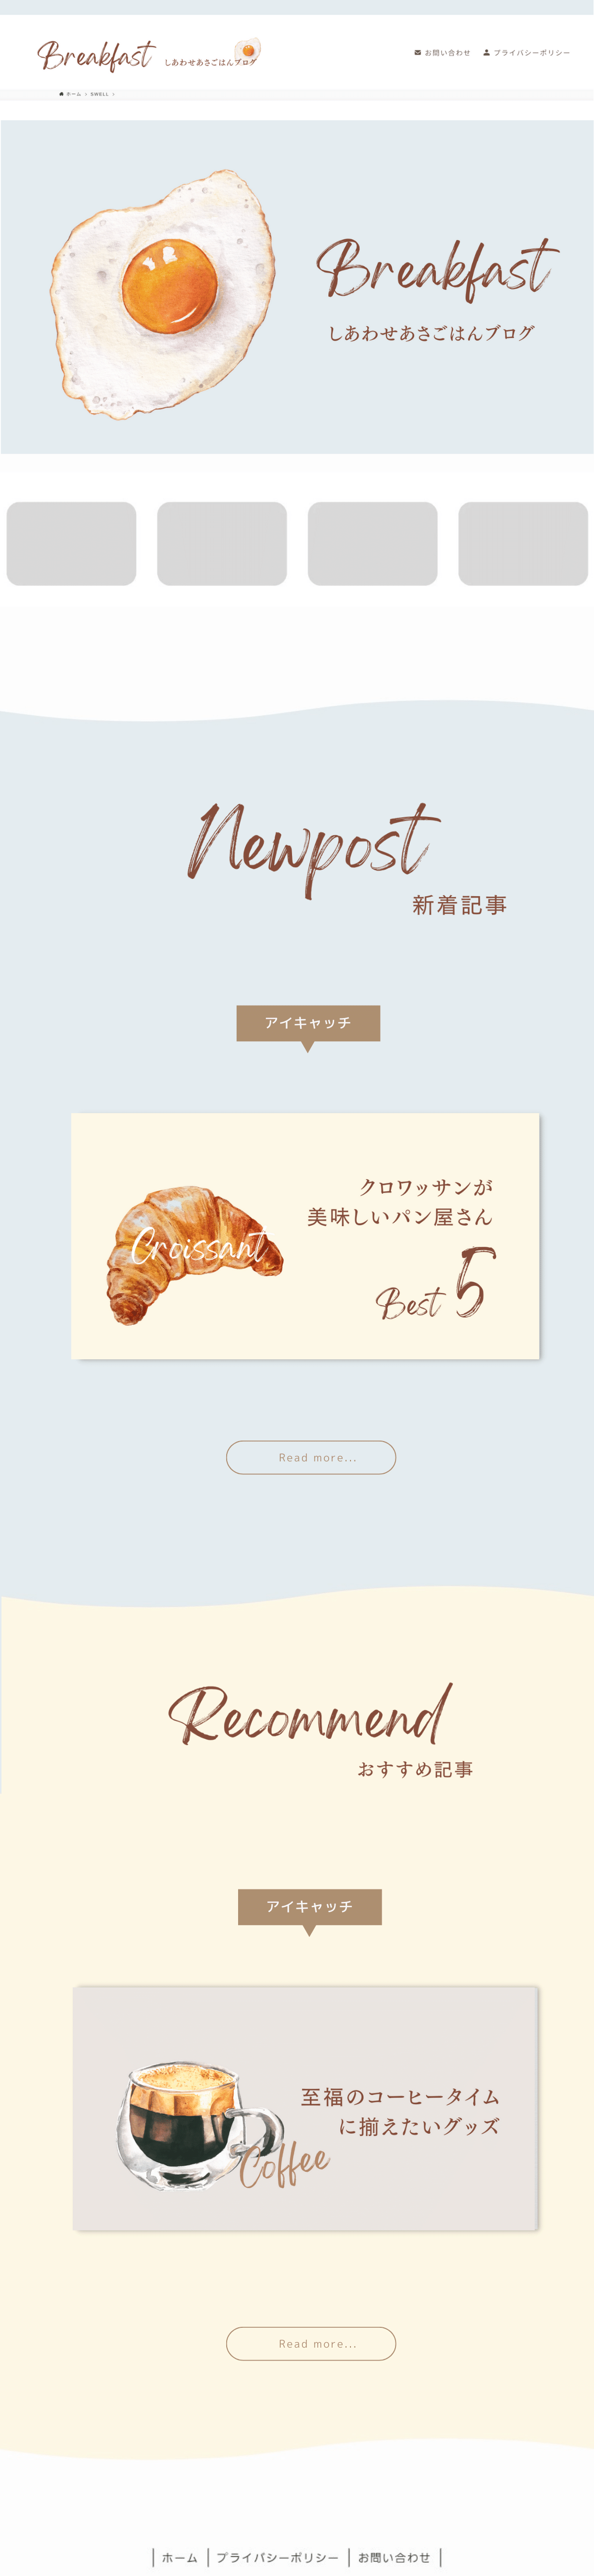 Newデザイン見本SWELL×Canvaおしゃれなブログ(long) (1200 × 5200 px) (32)